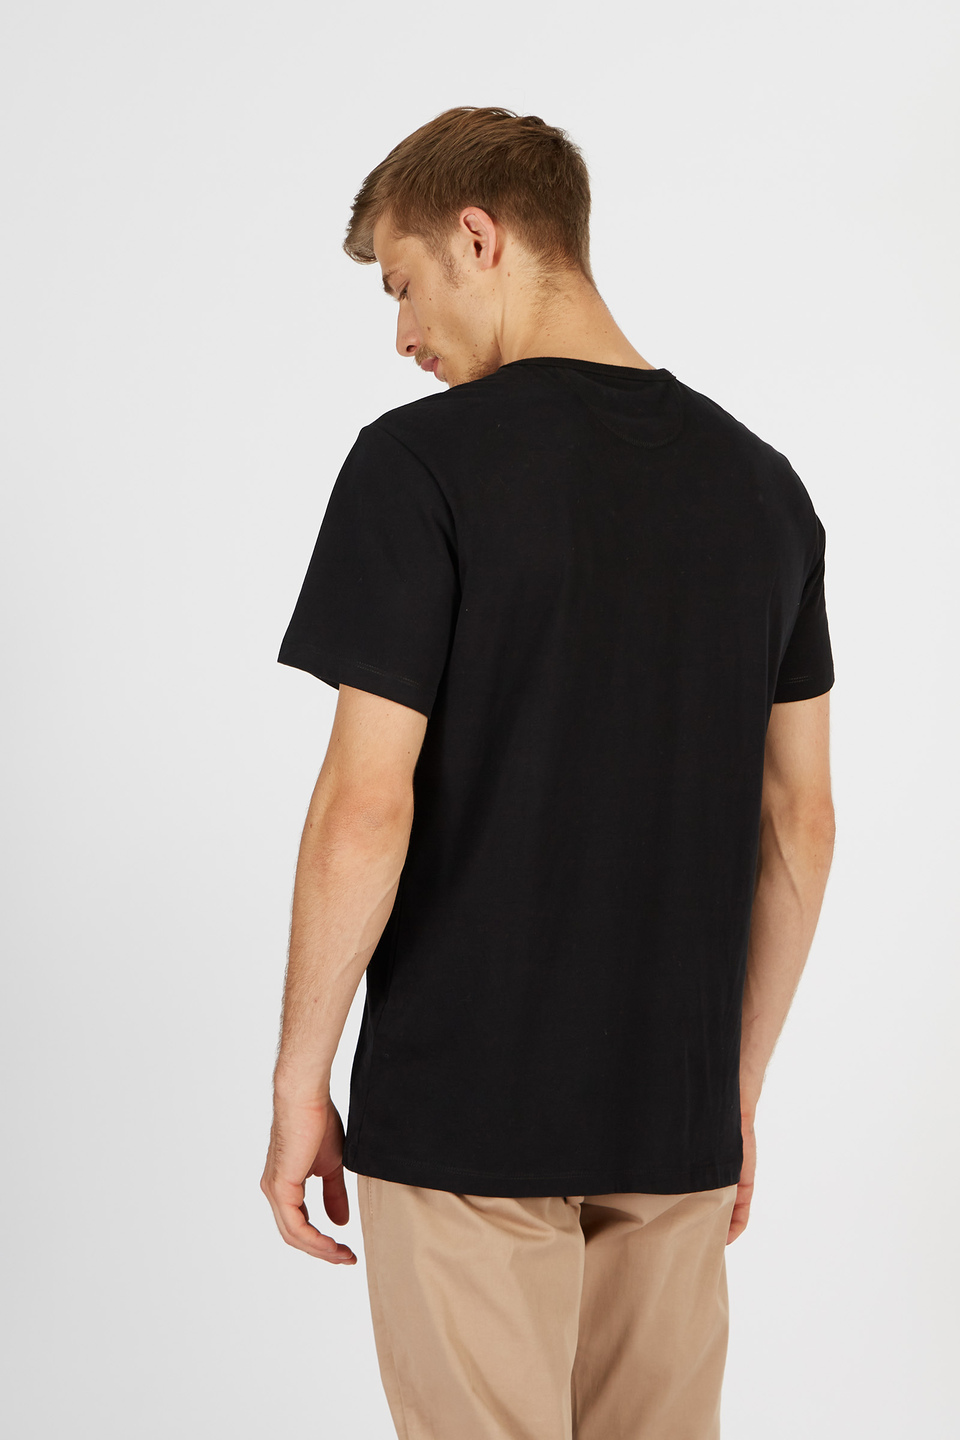 T-shirt da uomo a maniche corte in cotone 100% comfort fit | La Martina - Official Online Shop